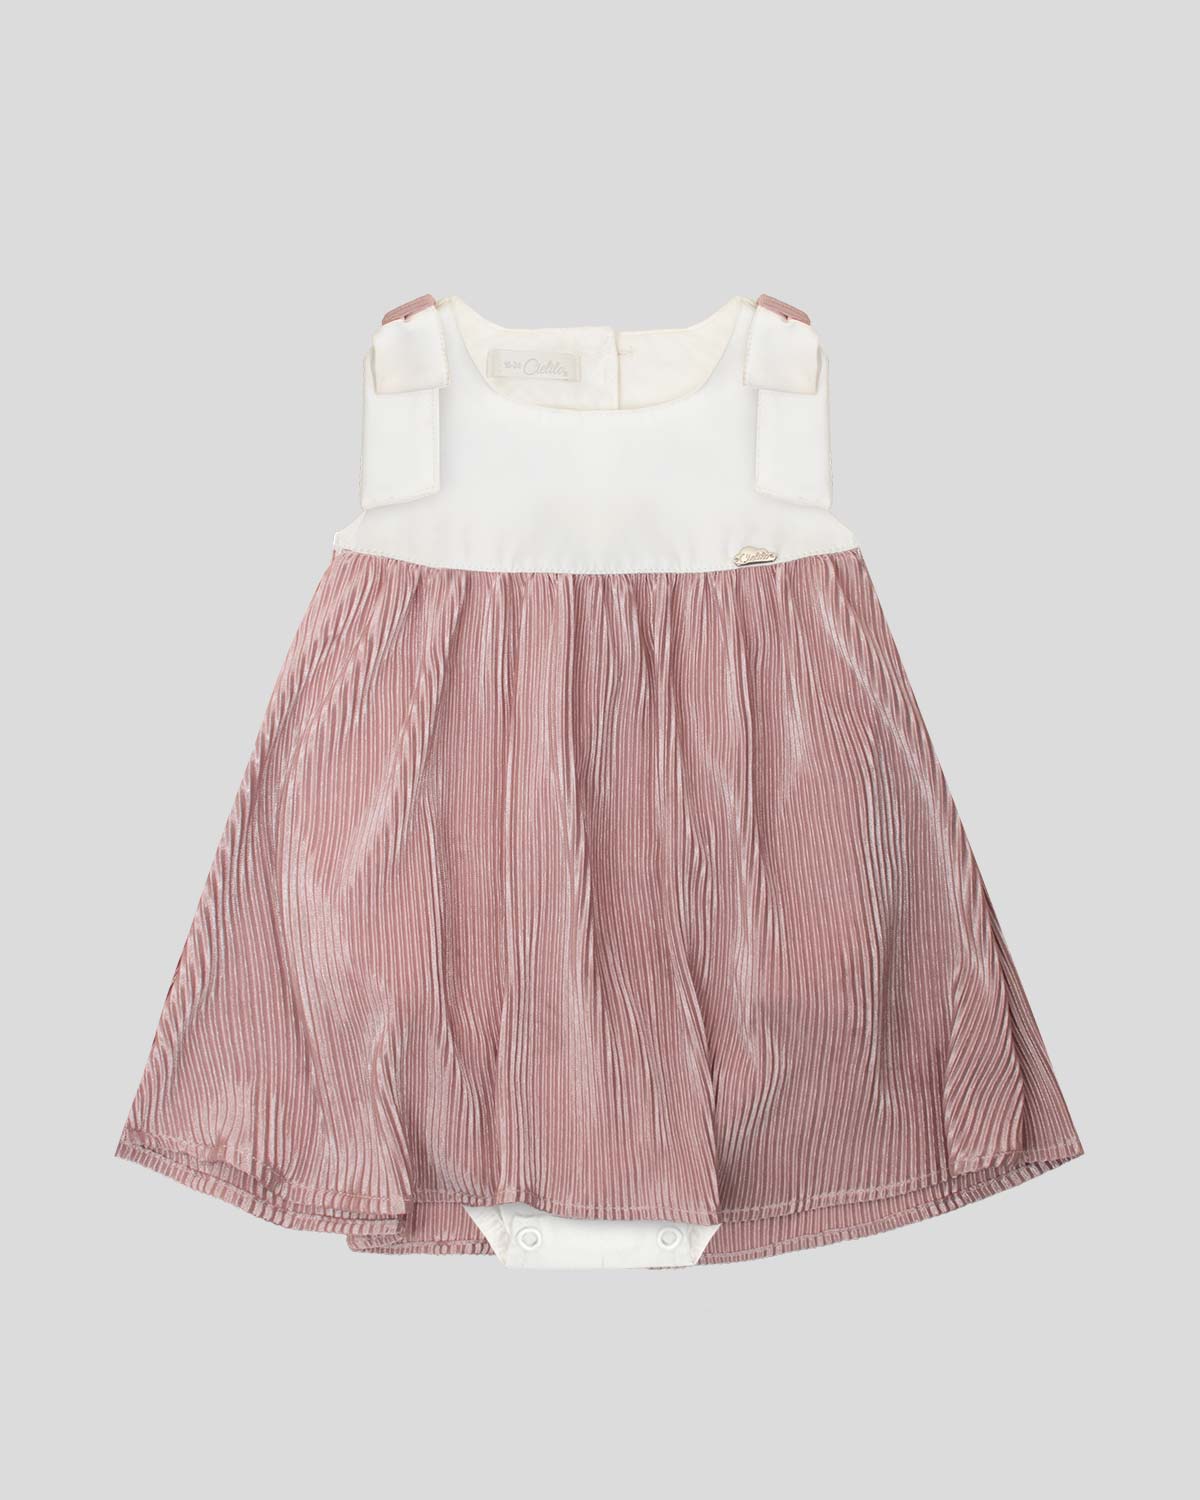 Vestido body blanco y palo de rosa en tela plisada con moño para bebé niña